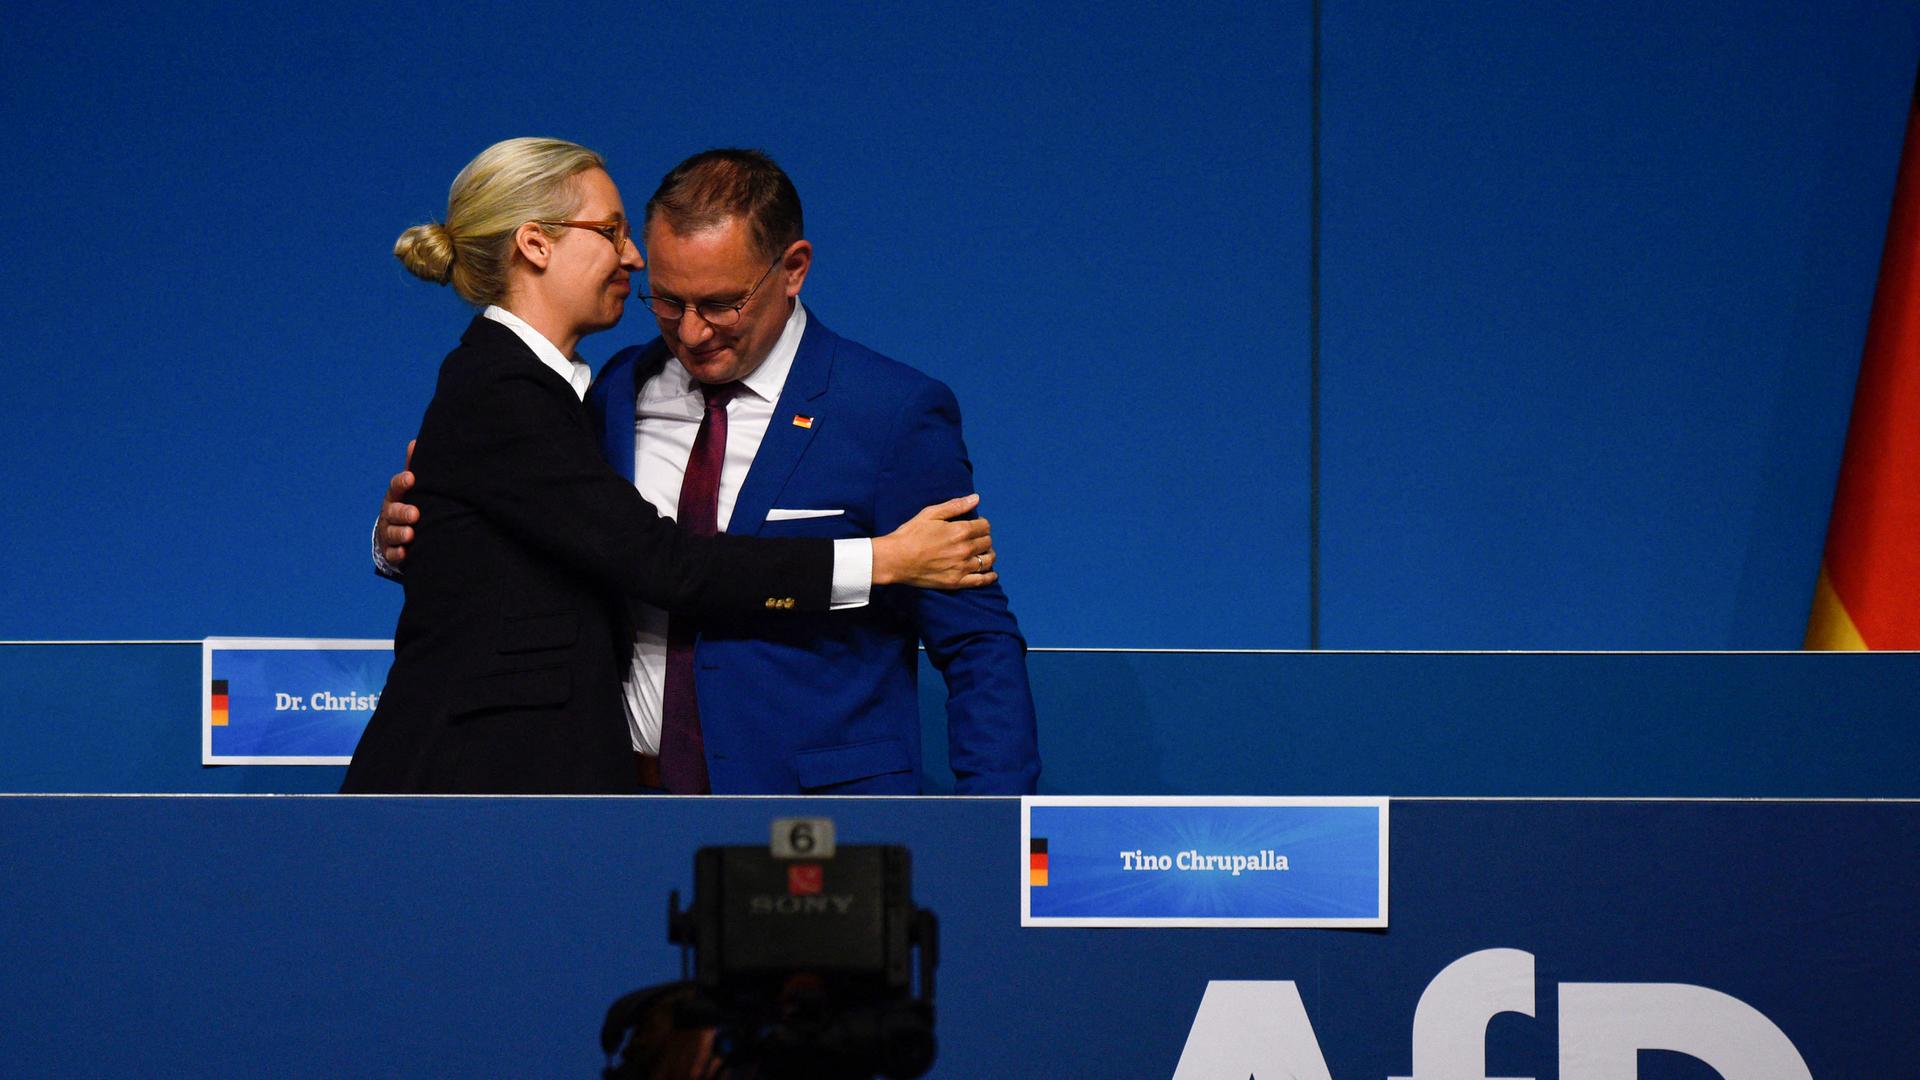 Die AfD-Vorsitzende Alice Weidel umarmt den Co-Vorsitzenden Tino Chrupalla auf der Bühne des Bundesparteitags in Essen.